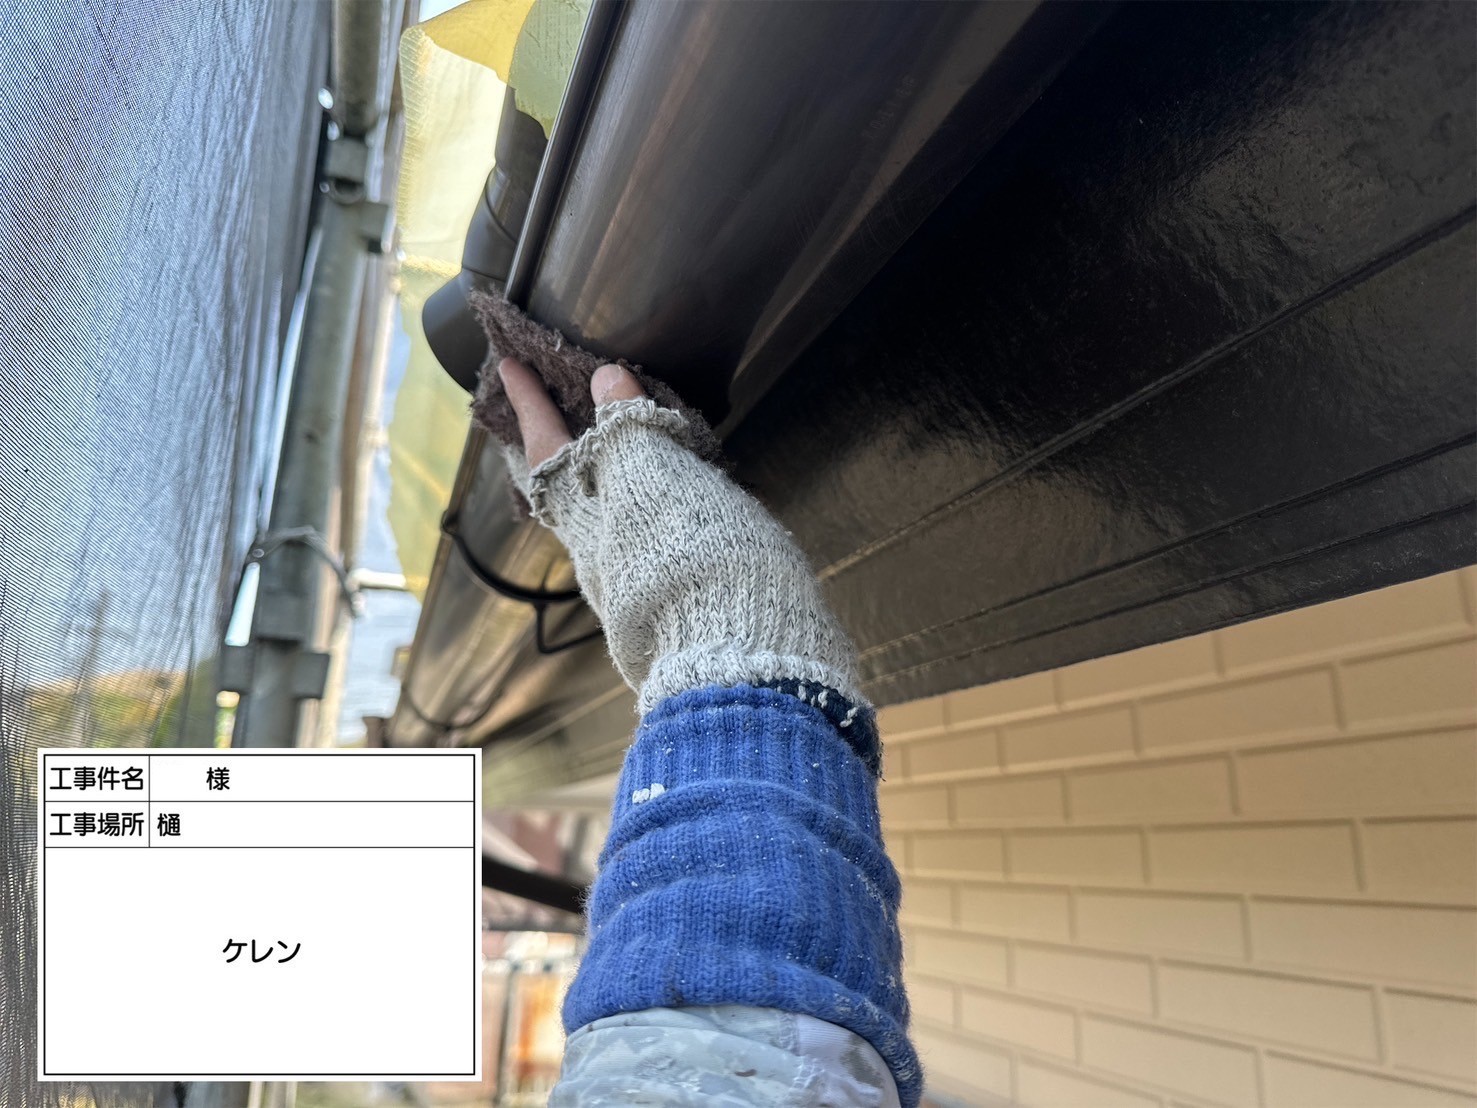 福岡県小郡市希みが丘のI様邸で高い遮熱性のあるフッ素塗料、エシカルプロクールFを使用した外壁塗装を行い、部分的にデザイン塗装を取り入れた工事を行っていきます。5/16着工です。【チラシより】